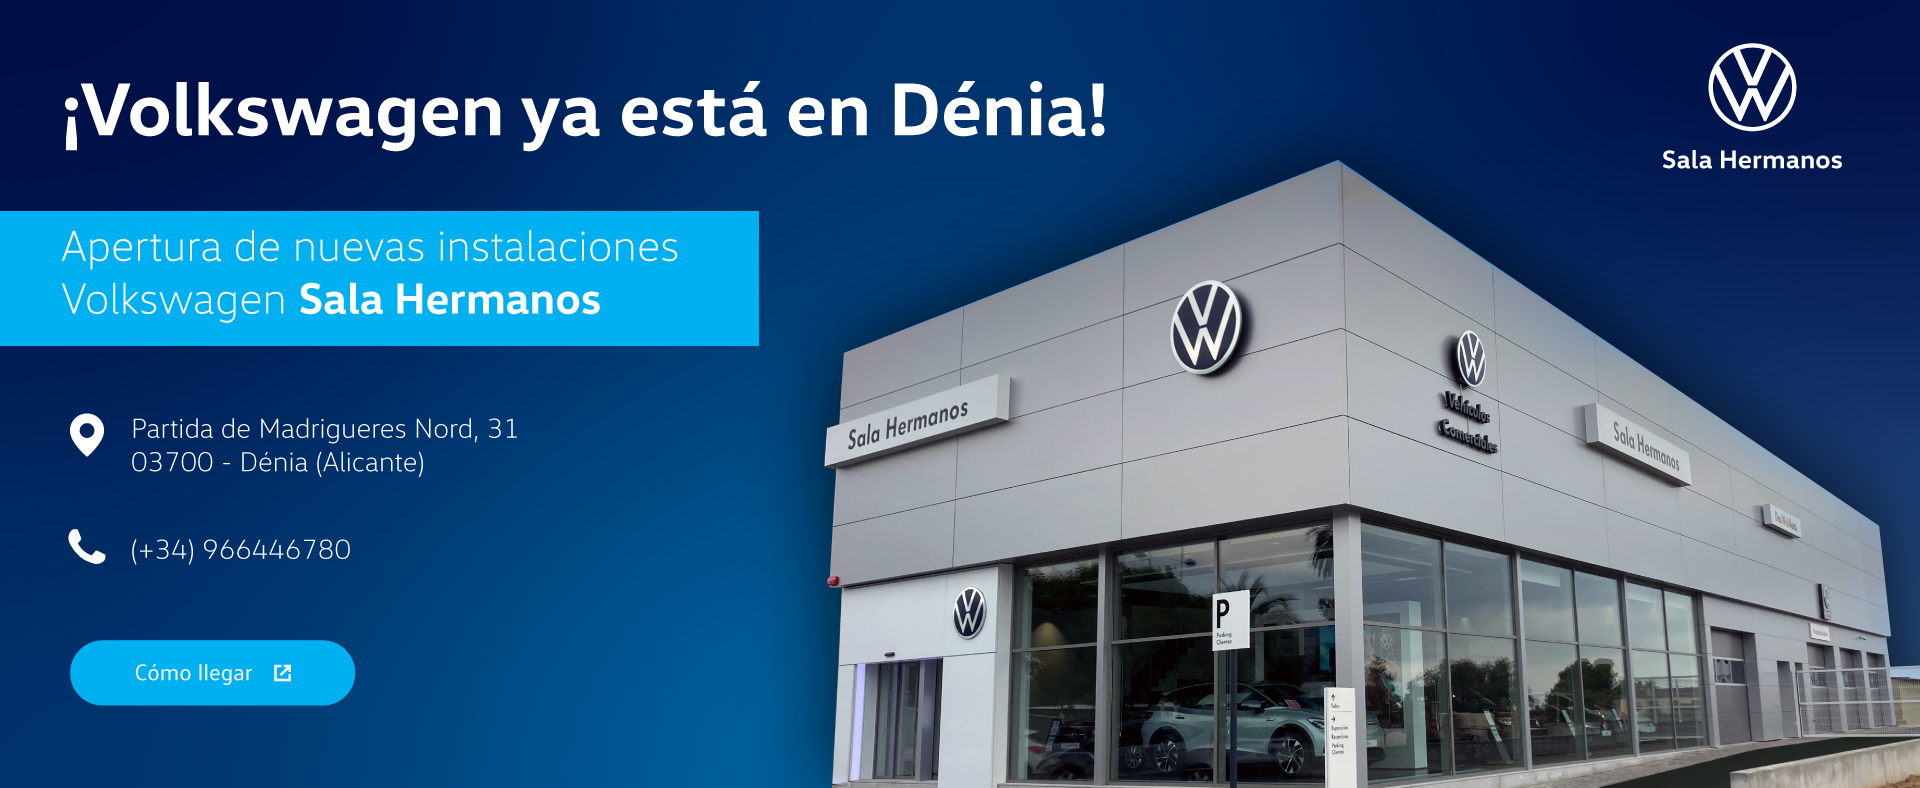 Concesionario Volkswagen Dénia